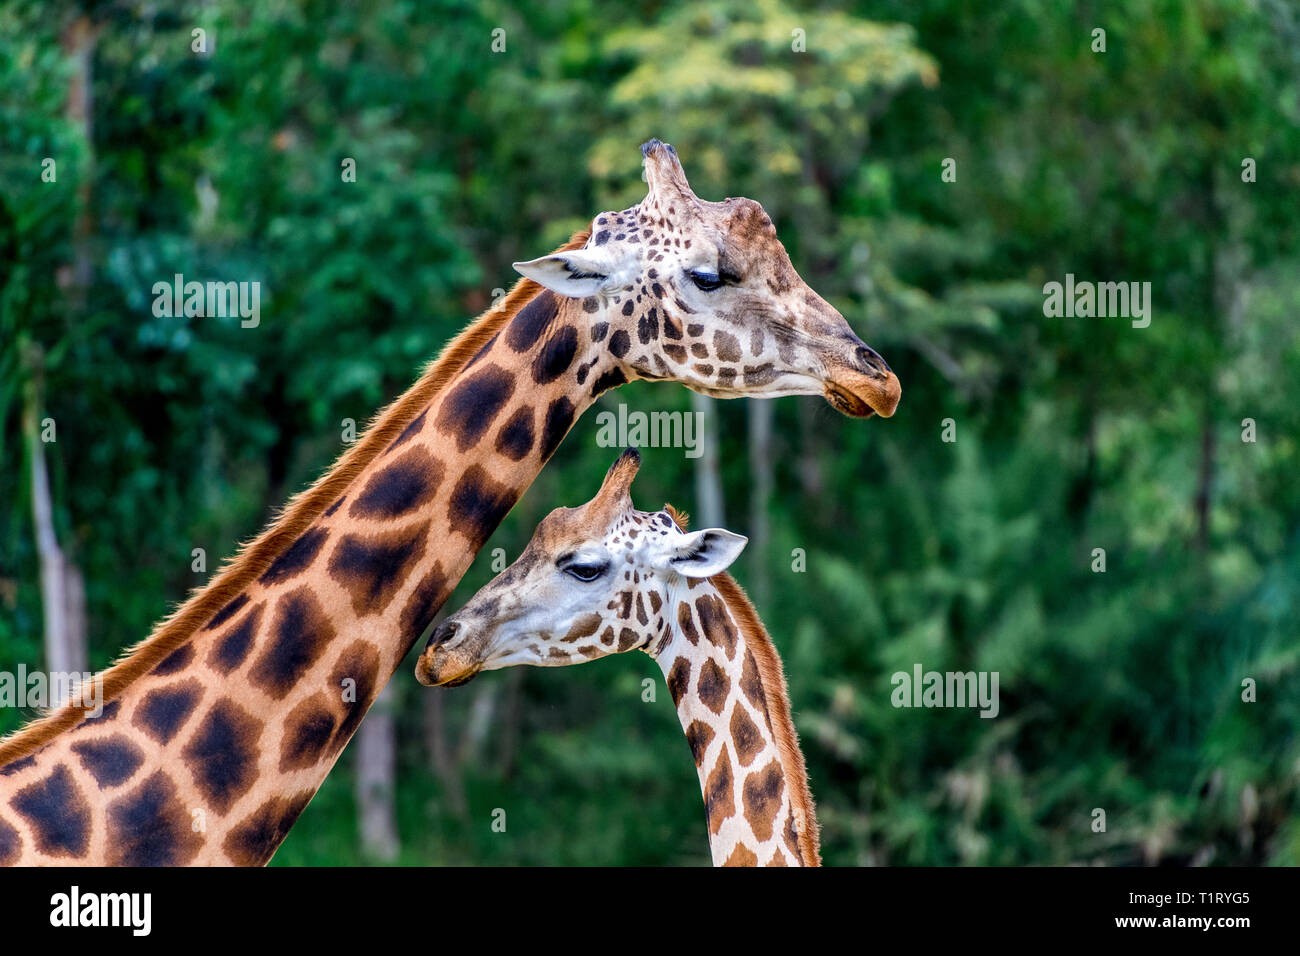 Deux magnifiques girafes avec la peau caractéristique qui distingue alors comme une girafe de Rothschild. Banque D'Images